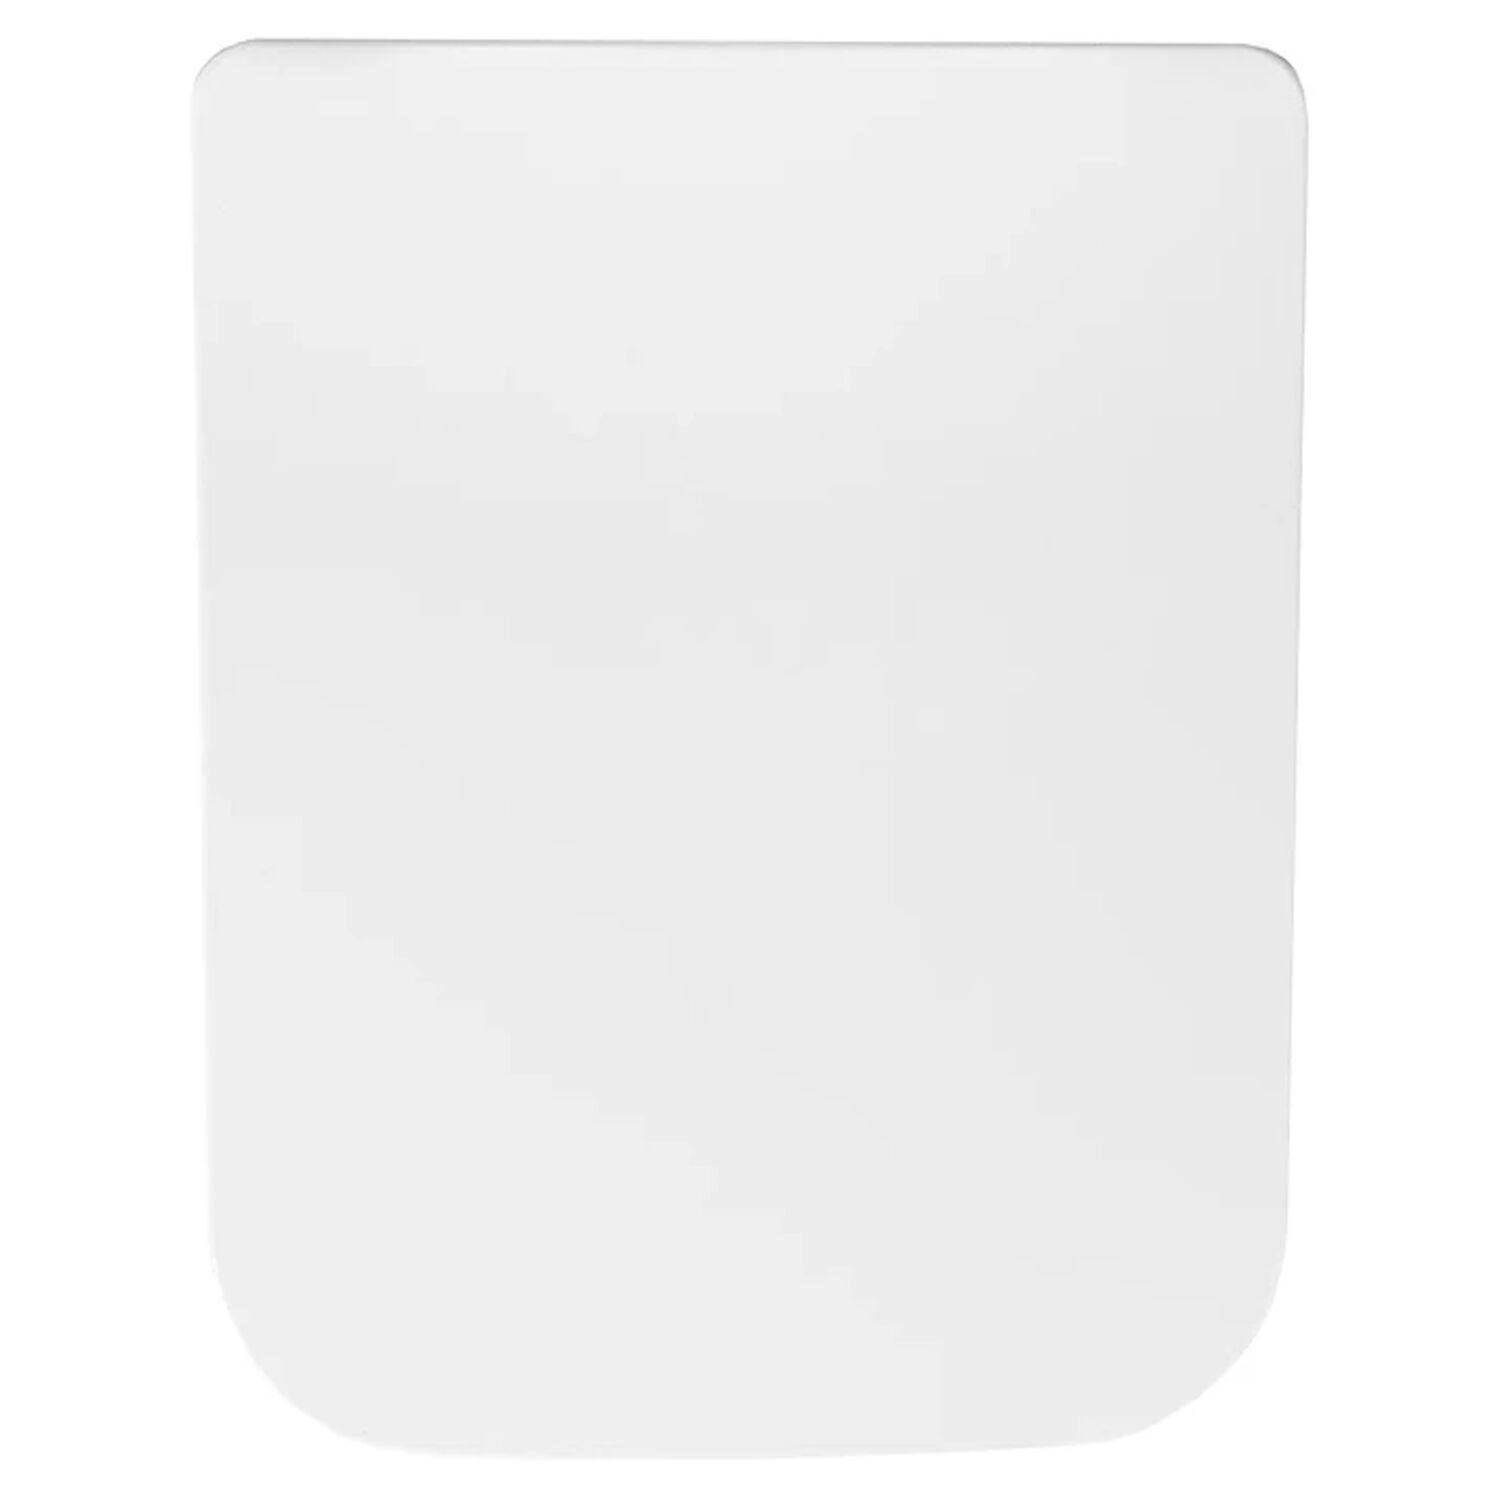 Сиденье Акватек Либра AQ0007-00 для унитаза, с микролифтом, цвет белый 